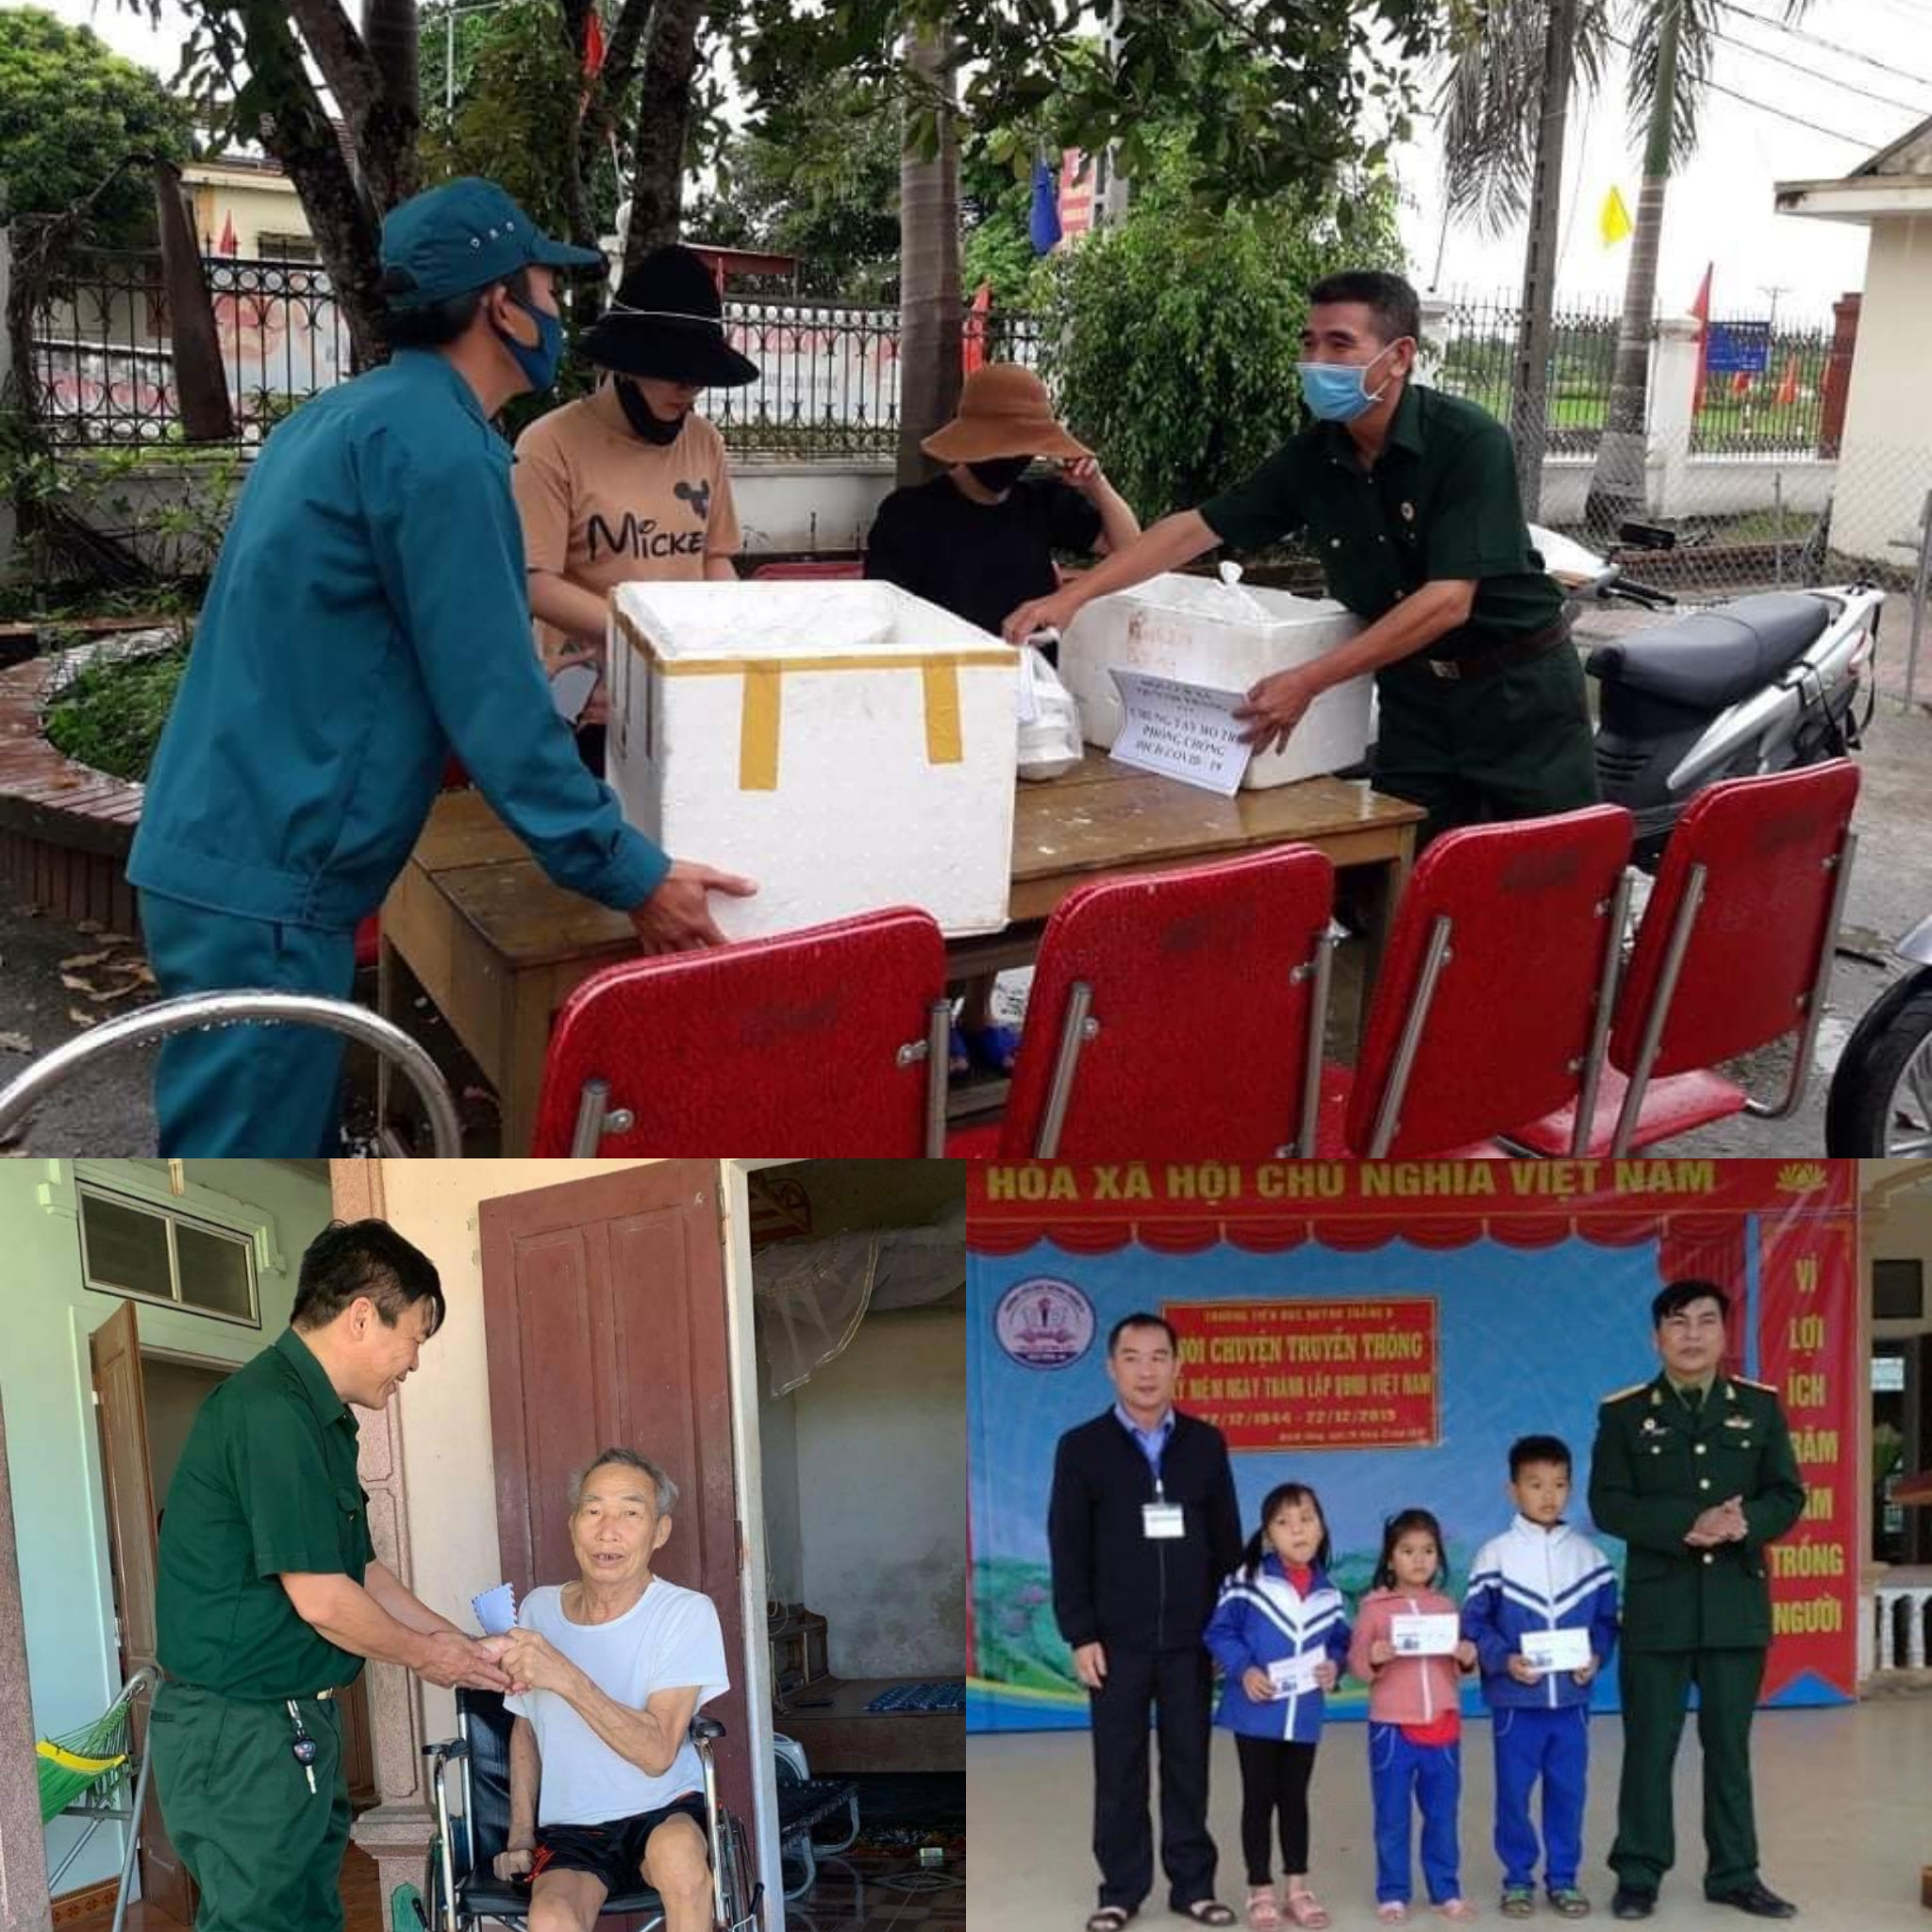 Hội Cựu chiến binh xã Quỳnh Thắng tham gia phòng chống dịch bệnh covid-19, thăm tặng quà các hoàn cảnh khó khăn trên địa bàn xã. Ảnh: Hoài Thu